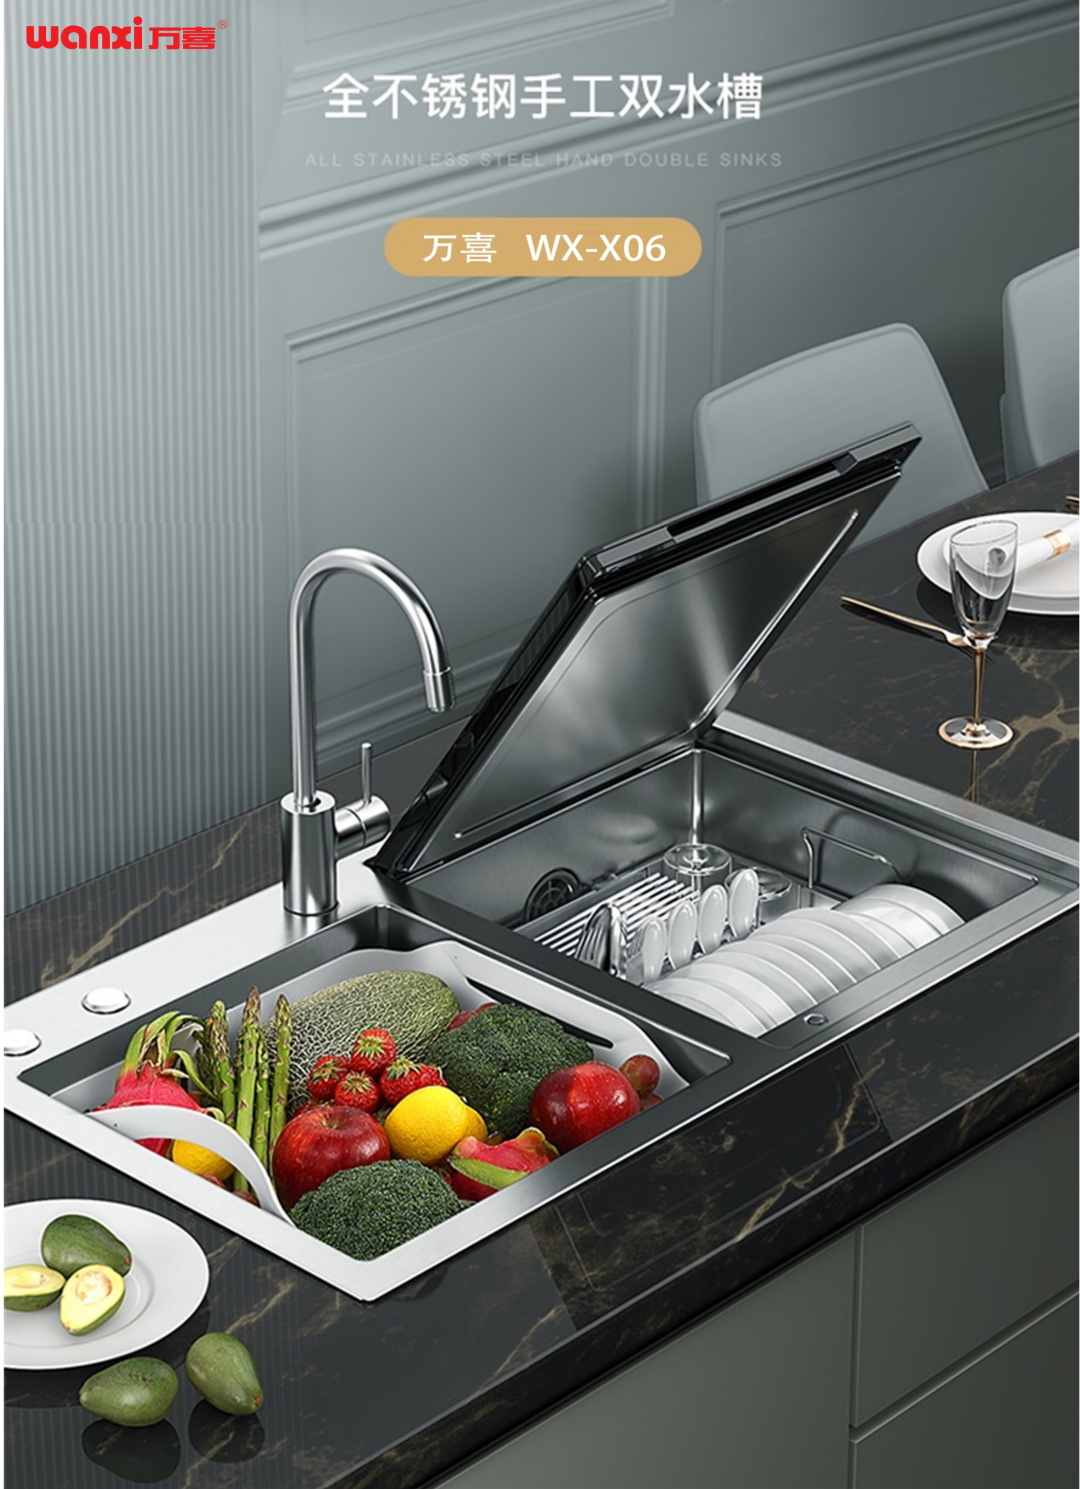 打造智能厨房的高级感，亚盈体育
WX-X06水槽洗碗机来营造